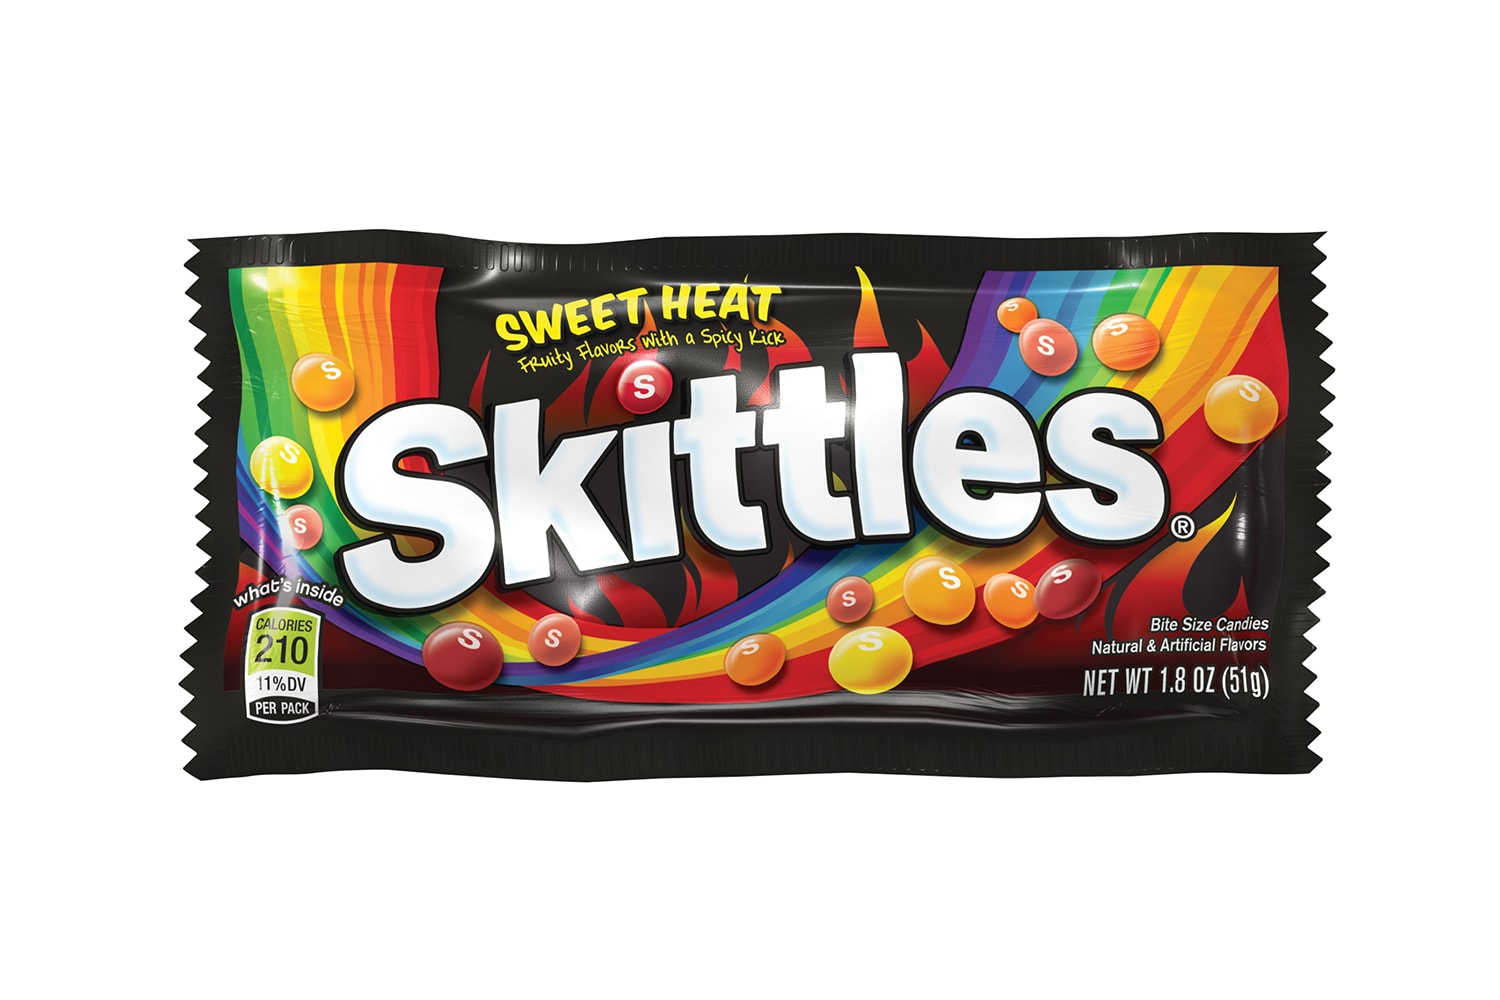 Skittles Sweet Heat Release Info Marshawn Lynch video